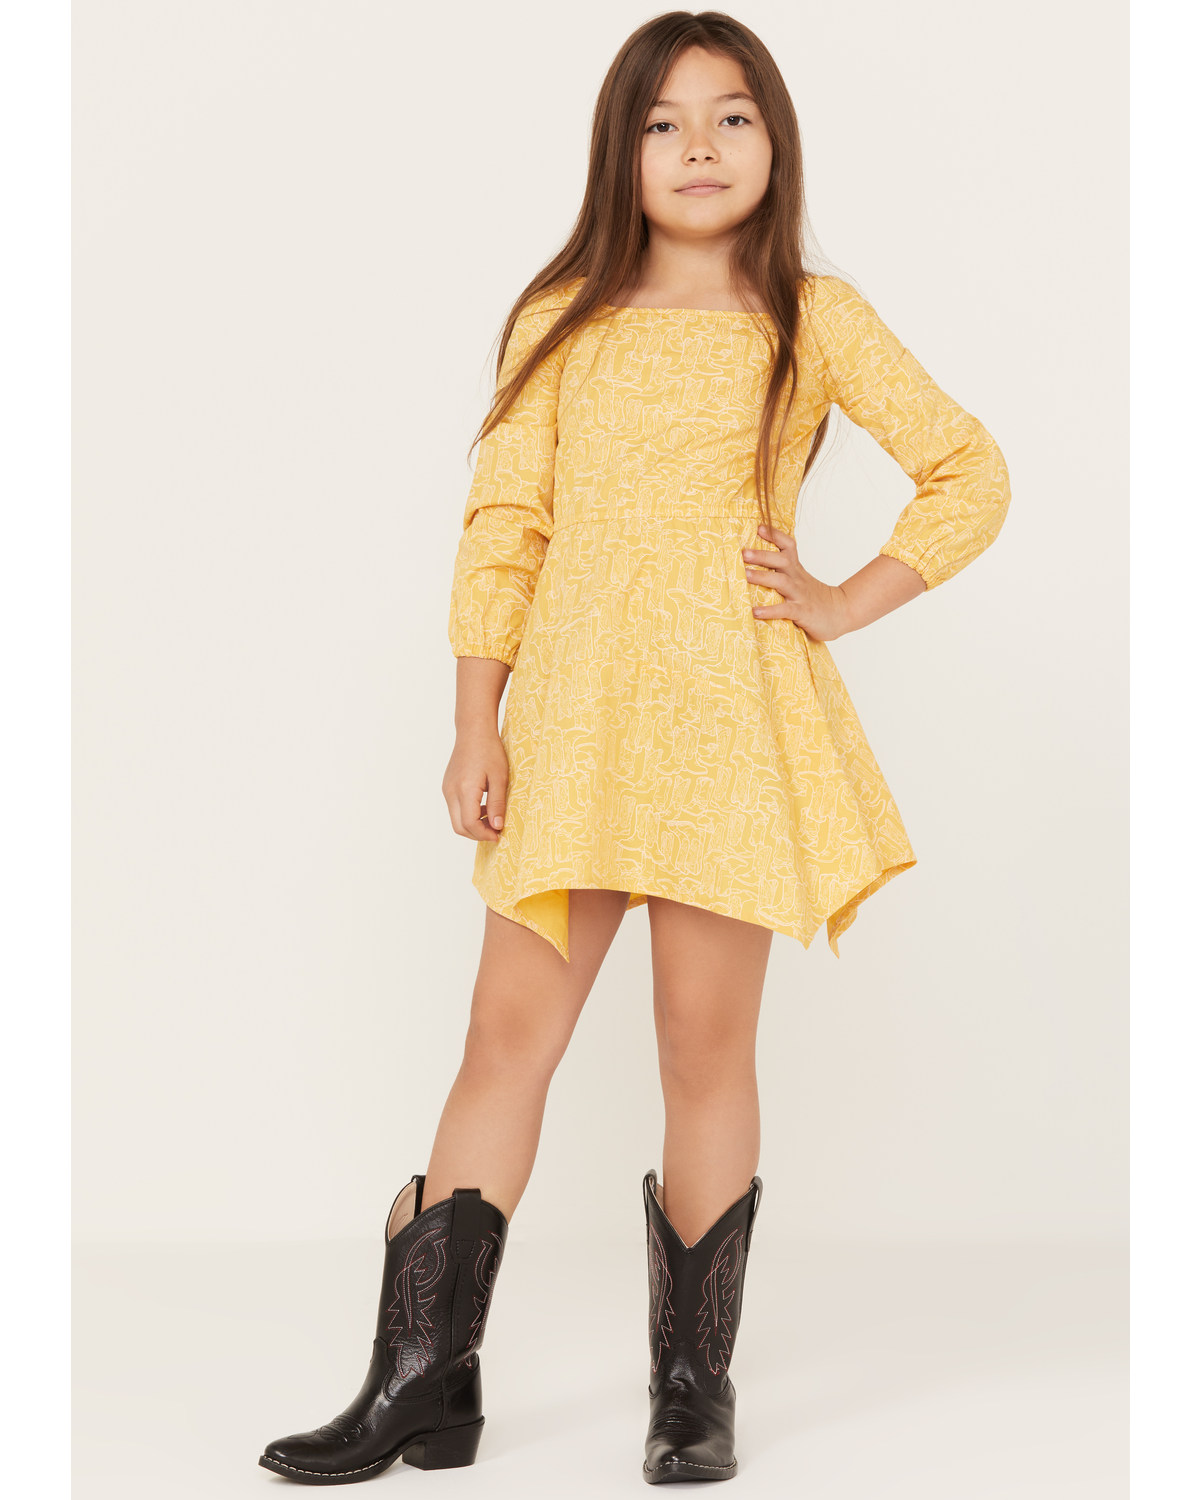 Wrangler Girls' Boot Print Long Sleeve Dress